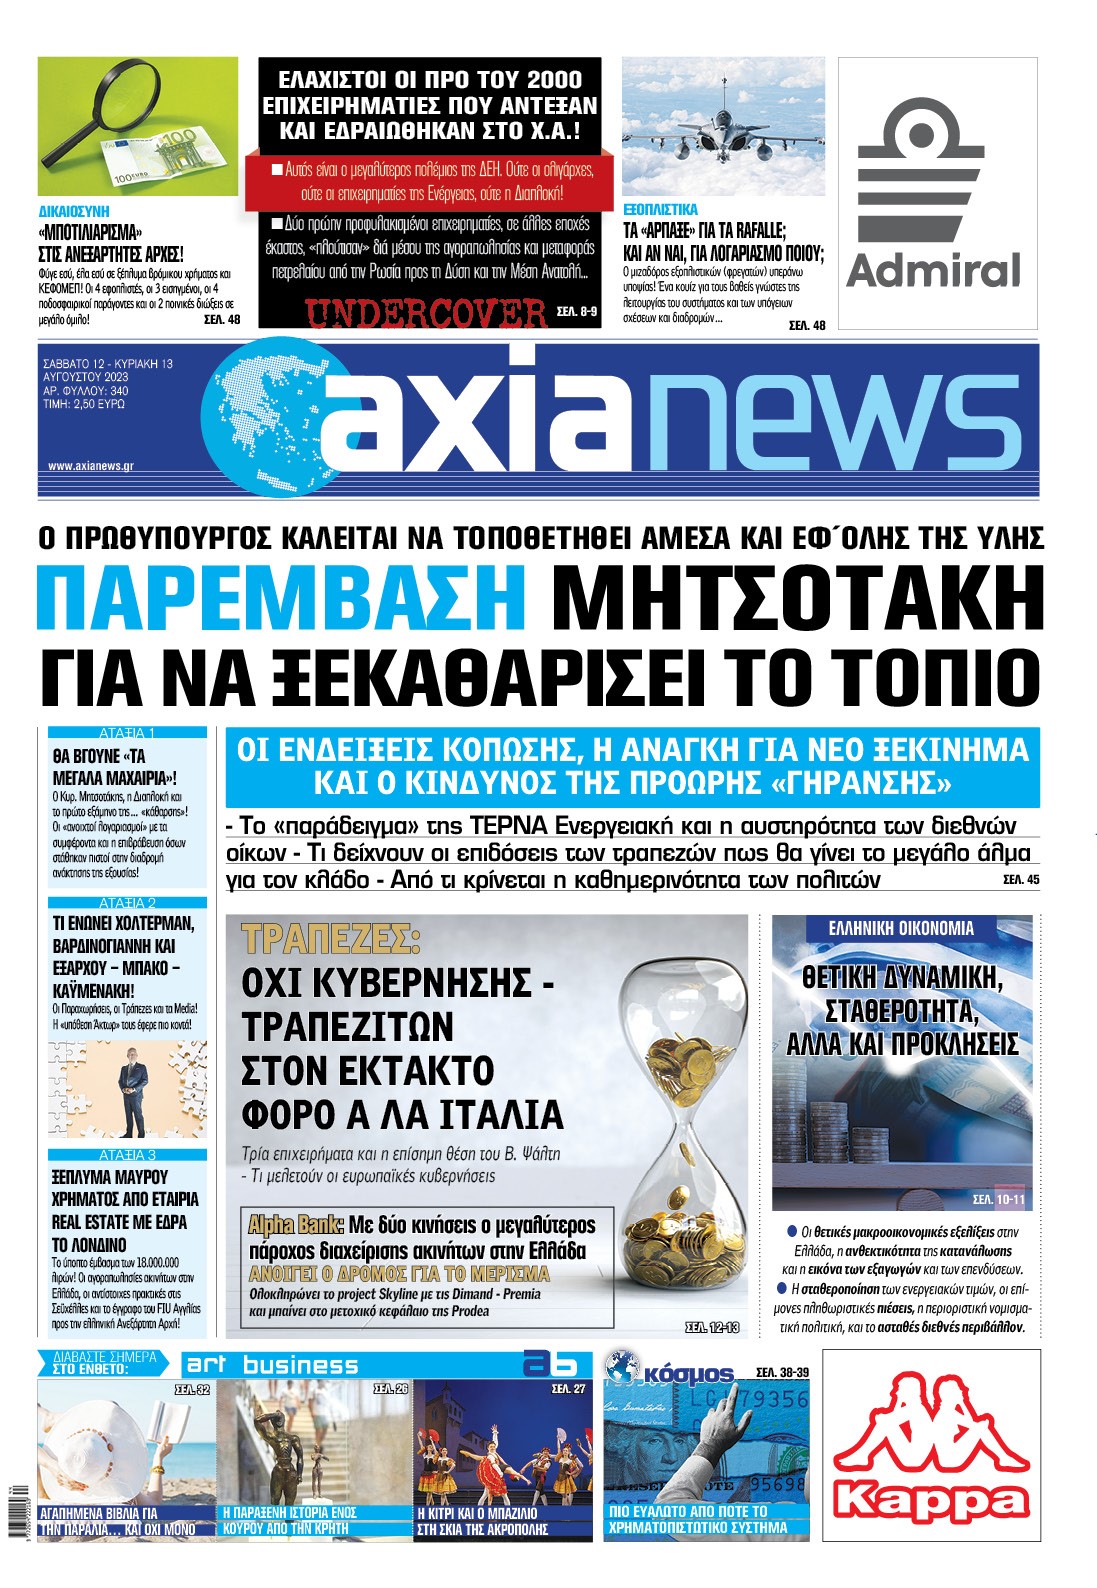 Στην «Axianews»: Παρέμβαση Μητσοτάκη για να ξεκαθαρίσει το τοπίο